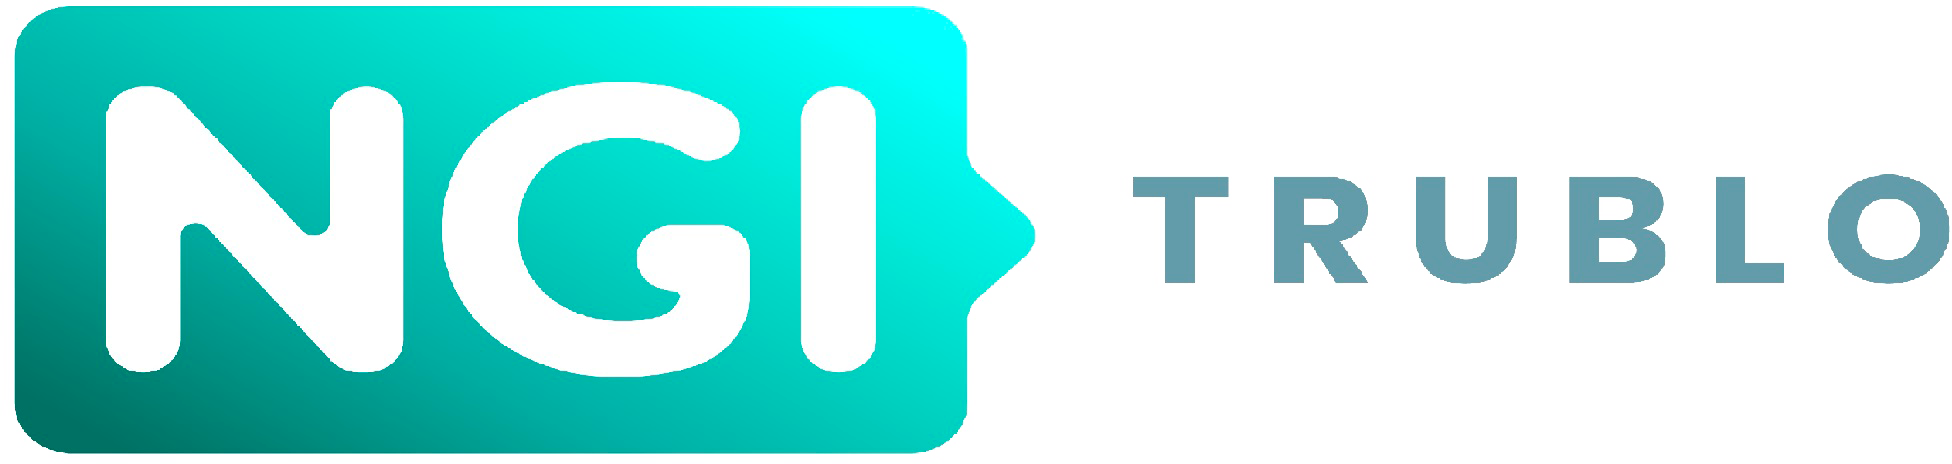 TruBlo Project logo